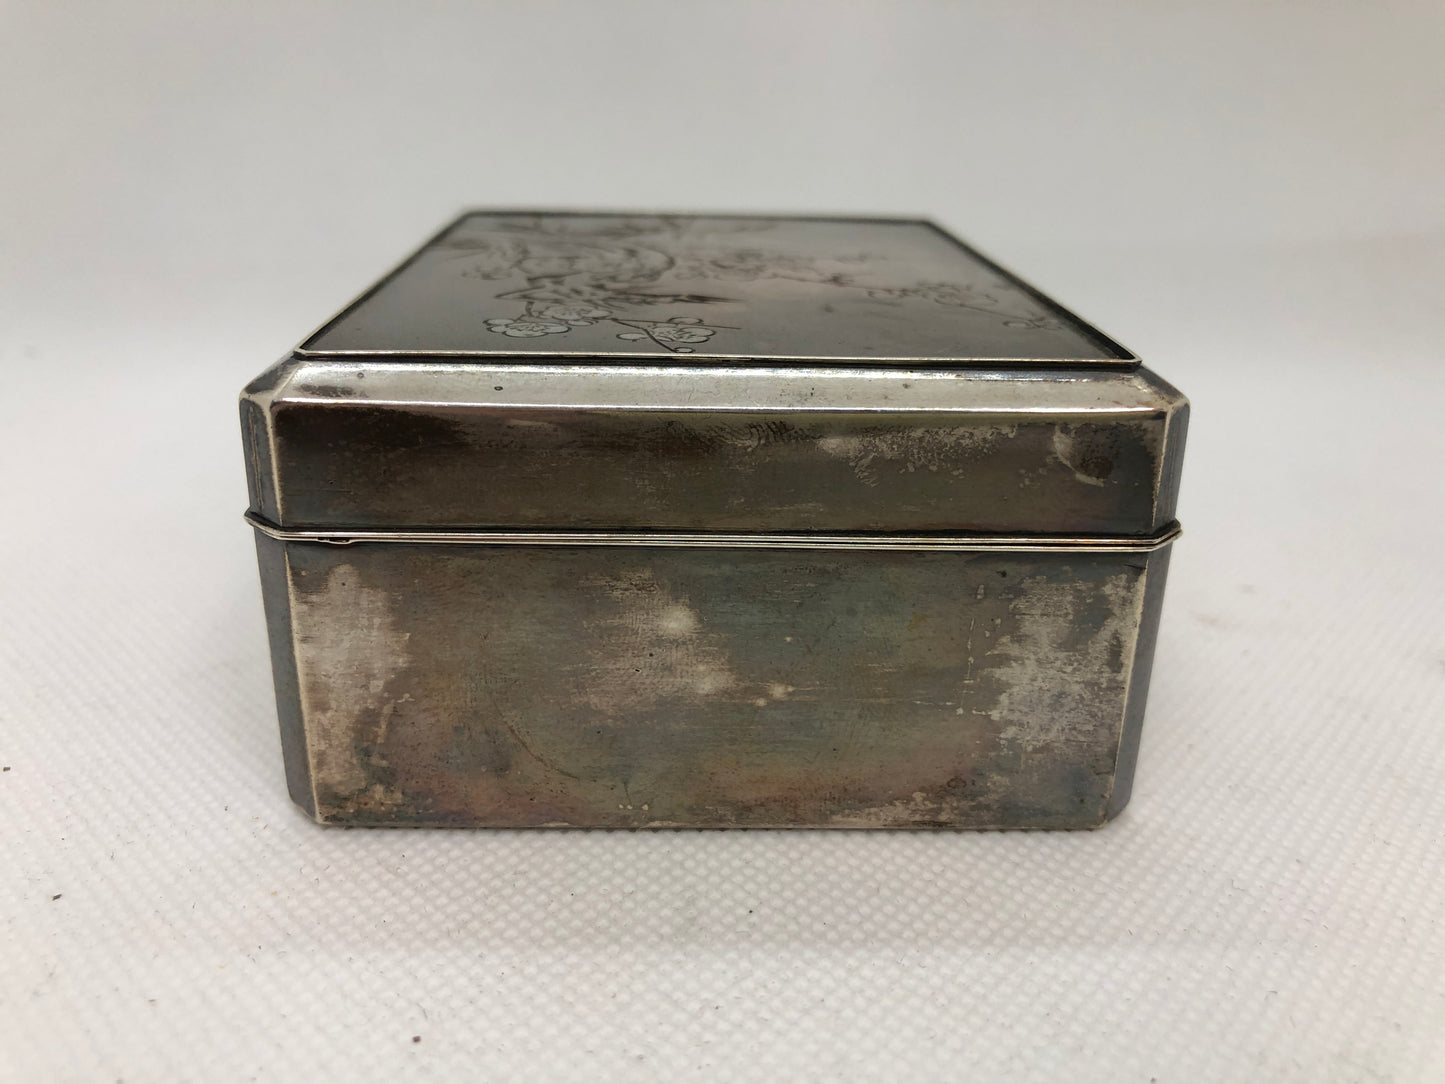 Y4454 BOX Silver accessory case metal engraving Japan antique vintage containter